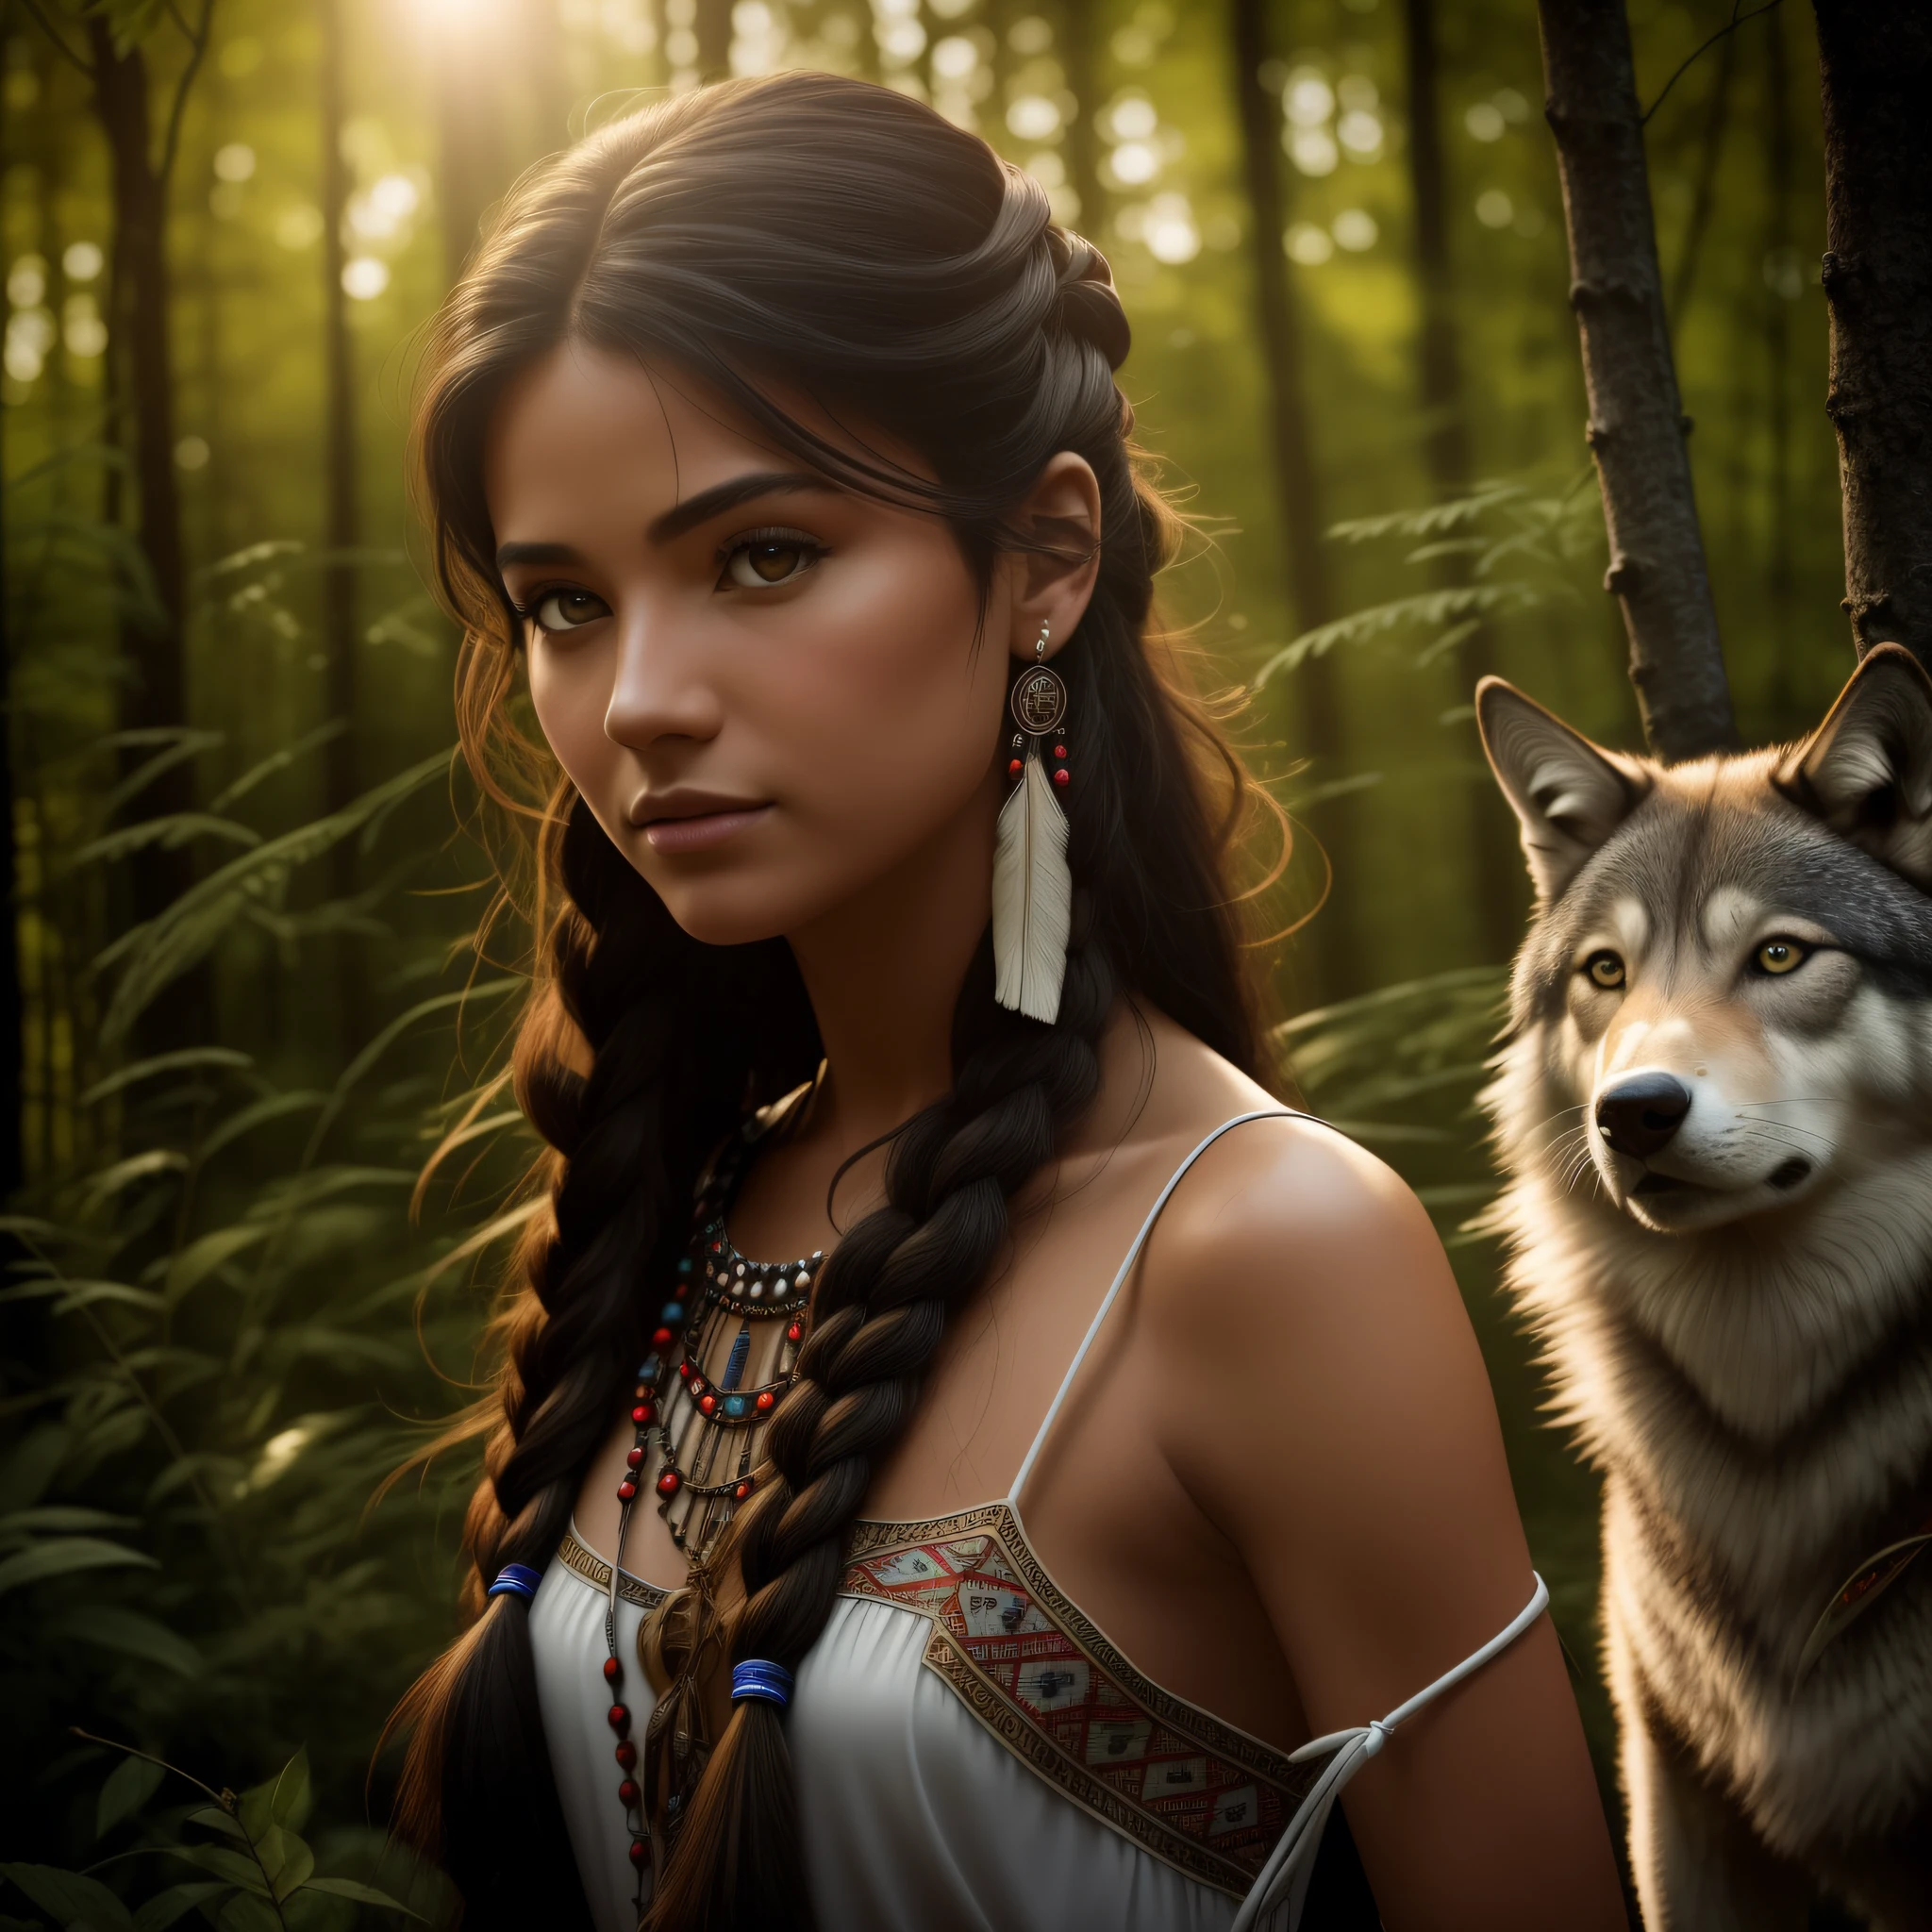 (最好的品質, 傑作: 1.1), (現實主義: 1.4),(傑作, 實際的: 1.4), (極高的精度: 1.2); (正面: 1.3), 實際的 portrait of a Native American girl with indigenous adornments with her ultra 實際的 pet wolf in the forest, 部落服饰, 超長髮, 裸露的肩膀, 夜空, 銀河輝光, 海洋, 水, 頭部傾斜, 風, 雲, 自然光, 戶外的, 獨自的, 休息, 電影光, 超高解析度, 8k超高清, 薄膜珠,  完美的解剖結構, Delicate and 精美的 skin, 最好的陰影, 精美的, 生的, 高解析度, 女獵人, 夜晚, 滿月度.